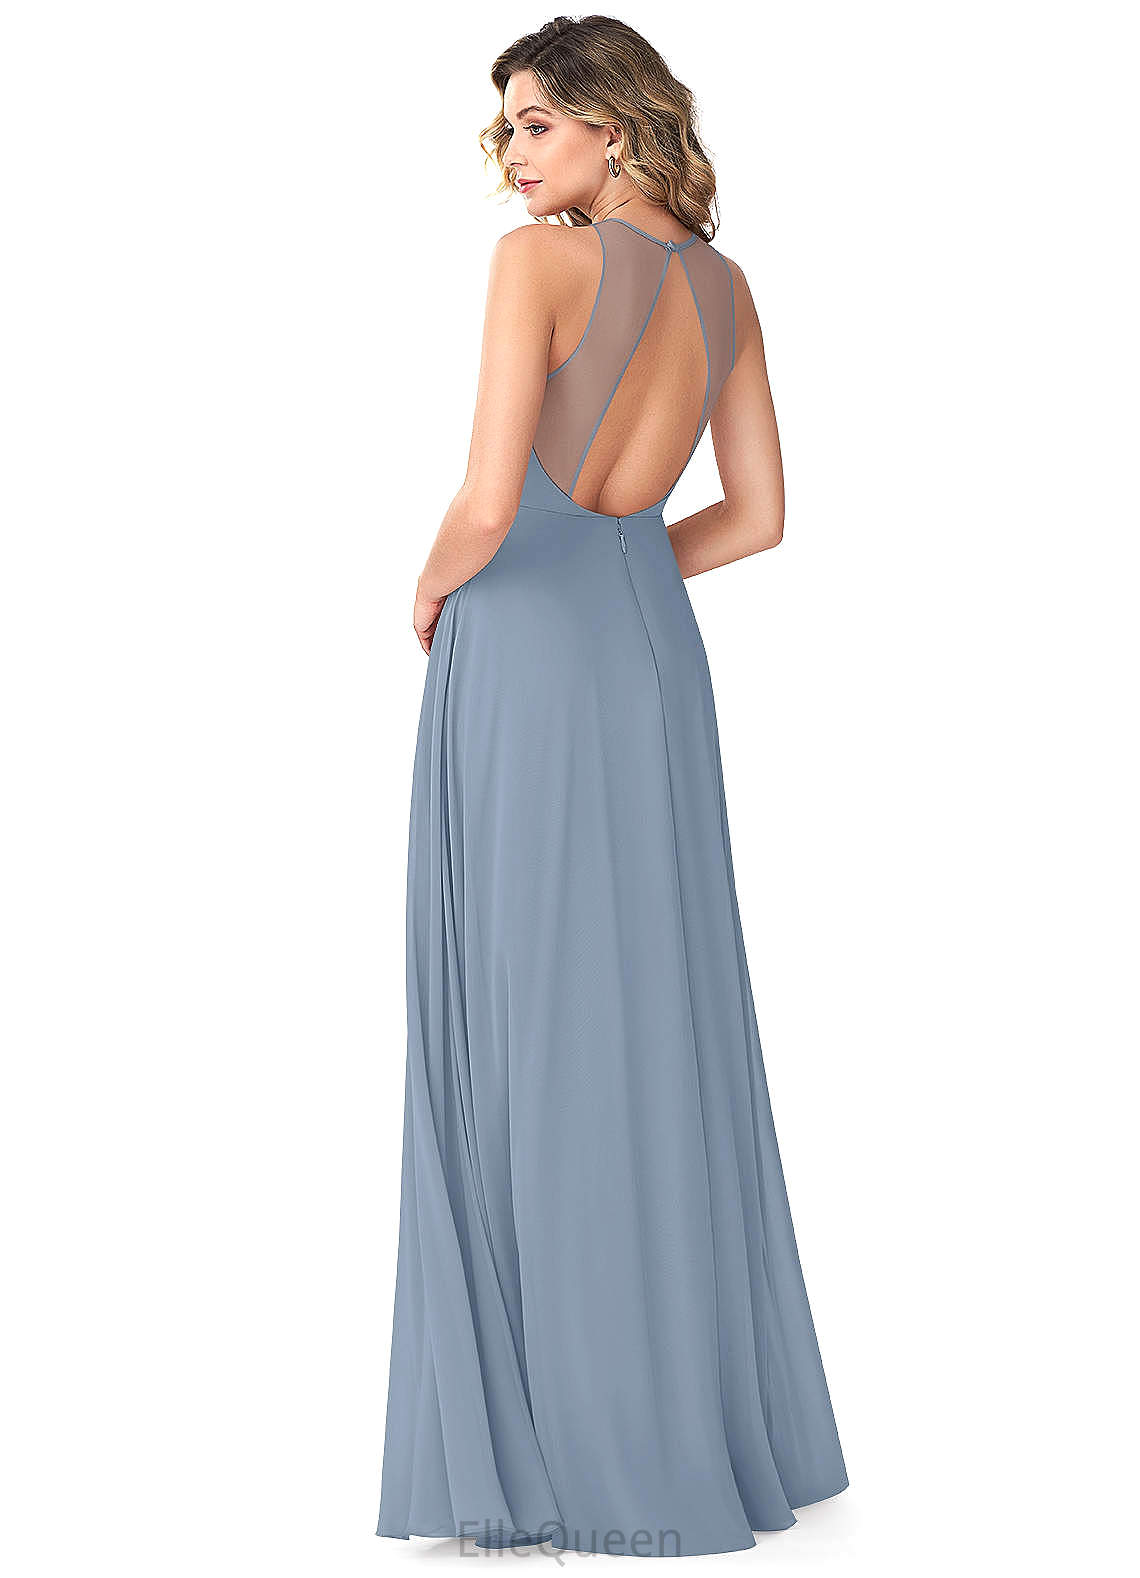 Gabrielle Trumpet/Mermaid Sleeveless Spaghetti Staps High Low Natural Waist Bridesmaid Dresses